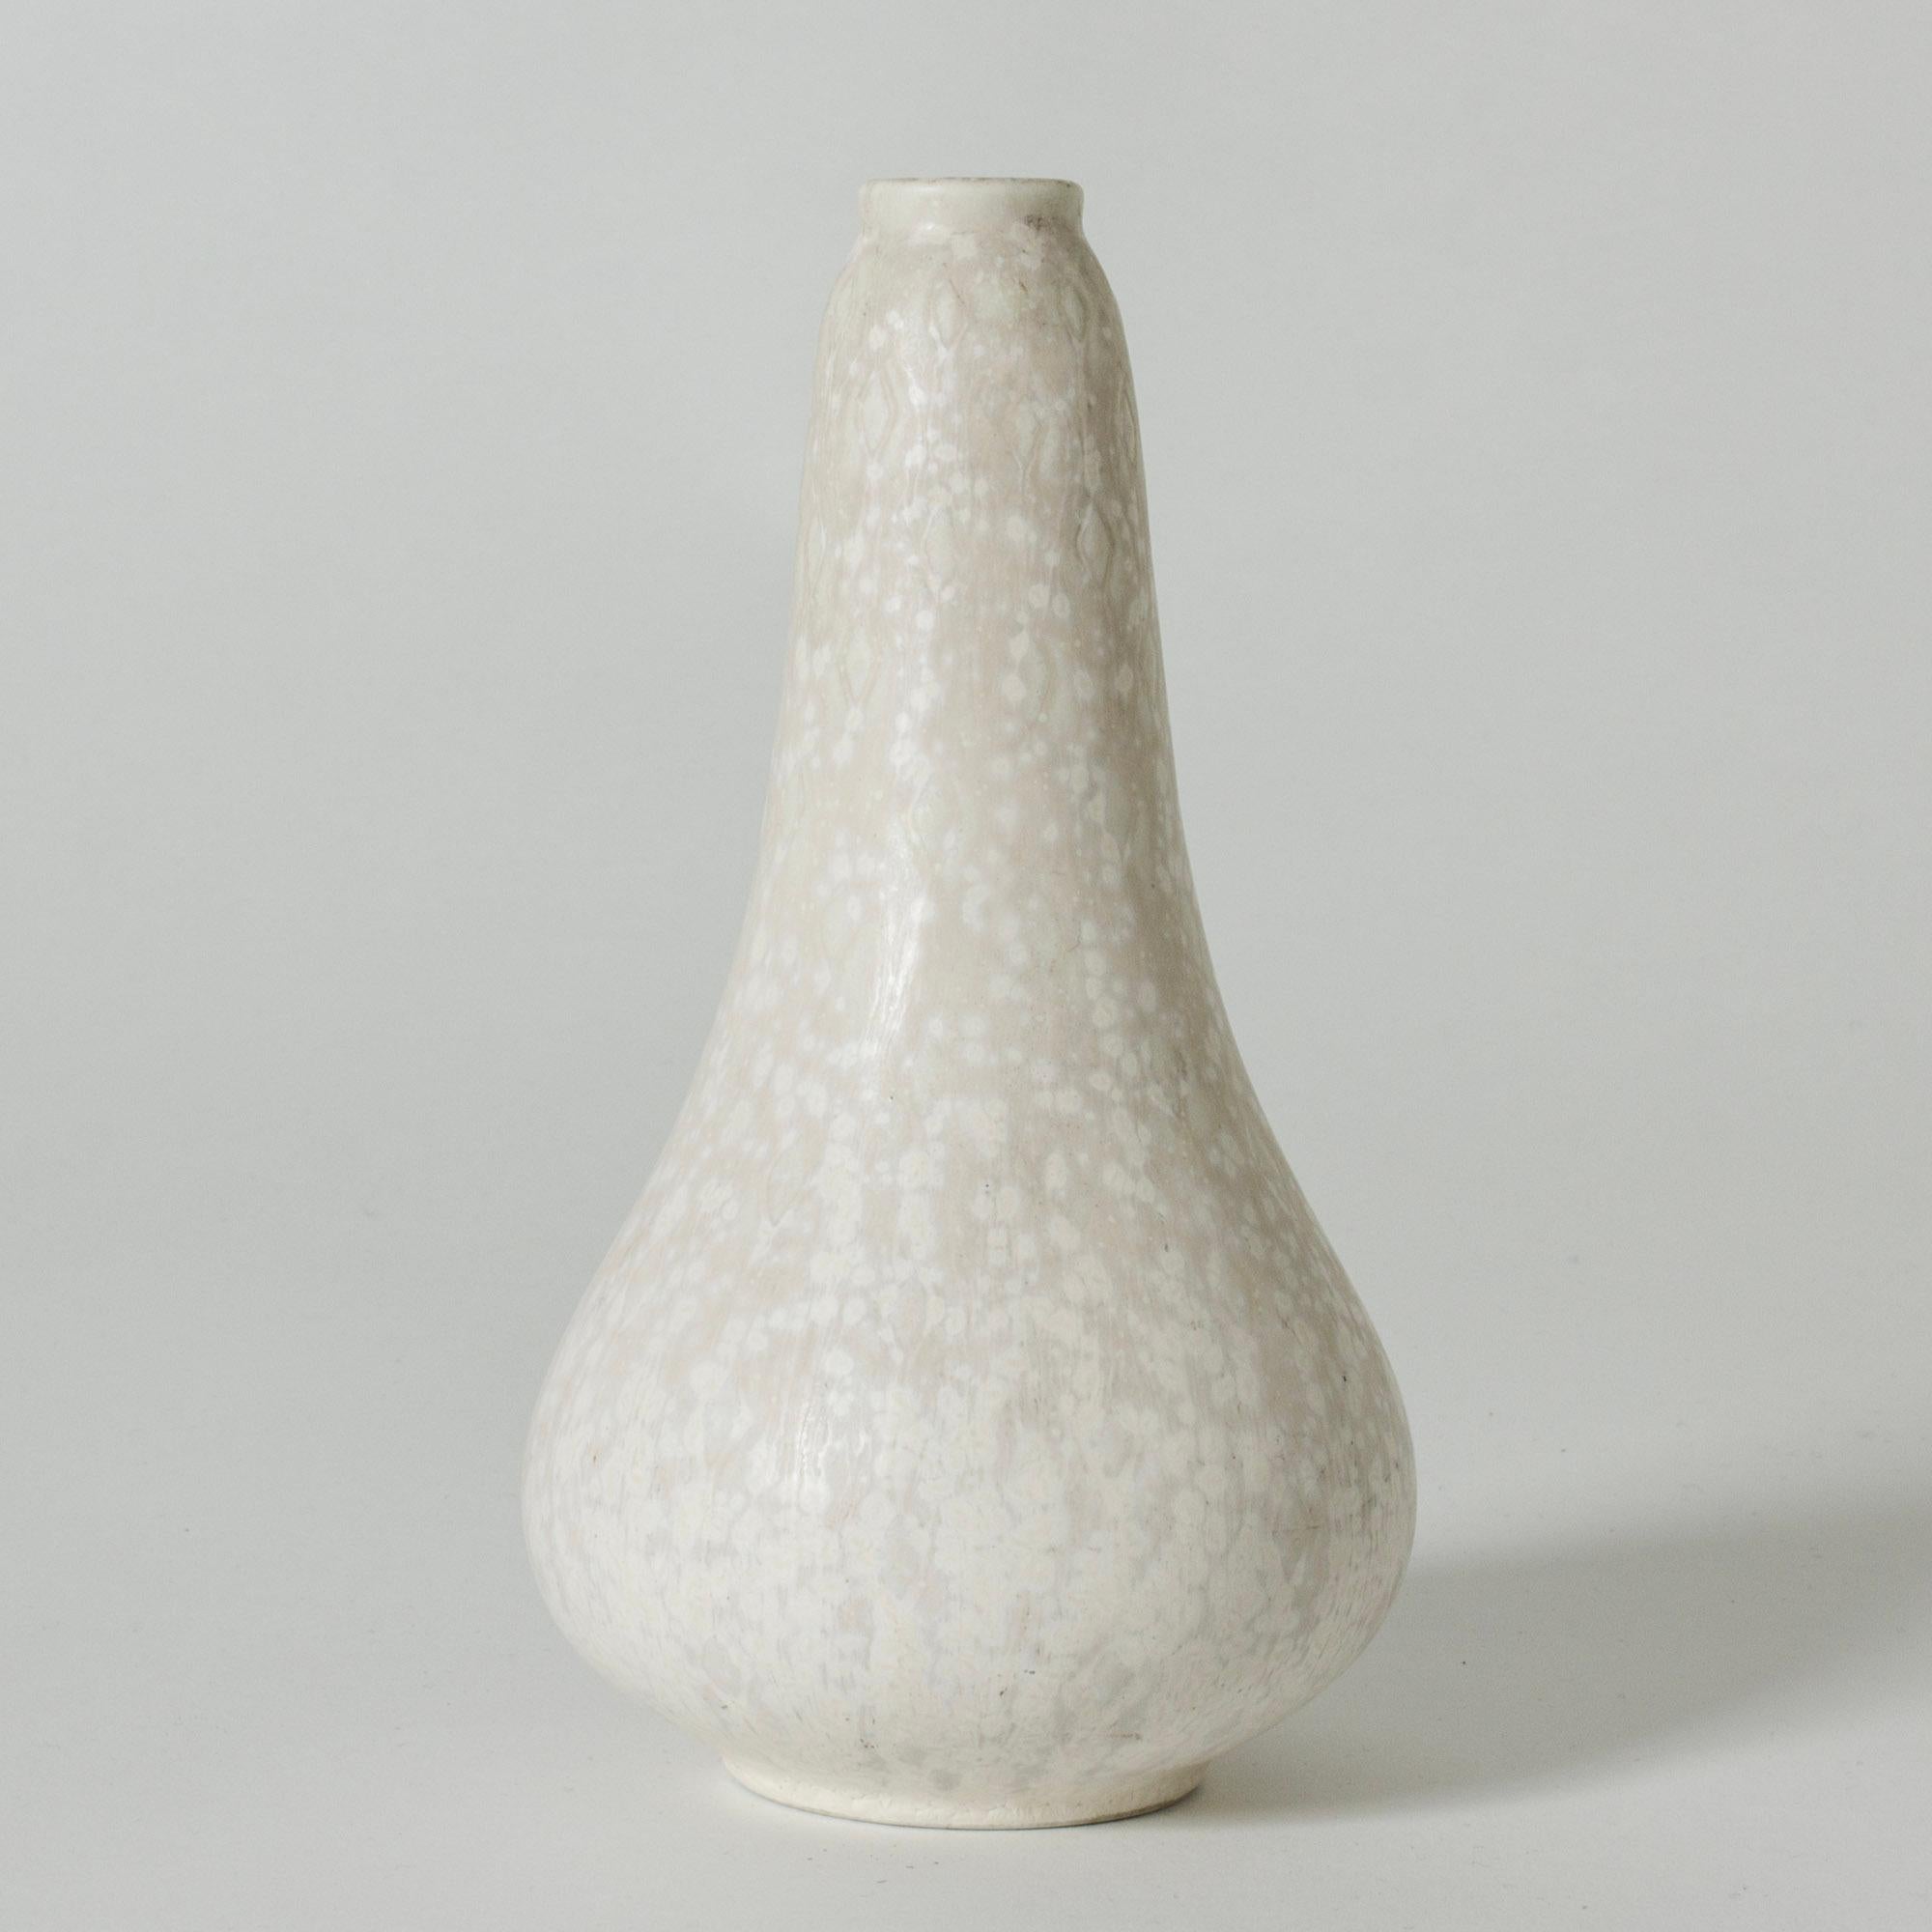 Vase en grès de Gunnar Nylund, en forme de goutte. Blanc coquille d'œuf émaillé sur un motif graphique subtil.

Gunnar Nylund a été l'un des céramistes et designers les plus influents de la période suédoise du milieu du siècle. Il a été le chef